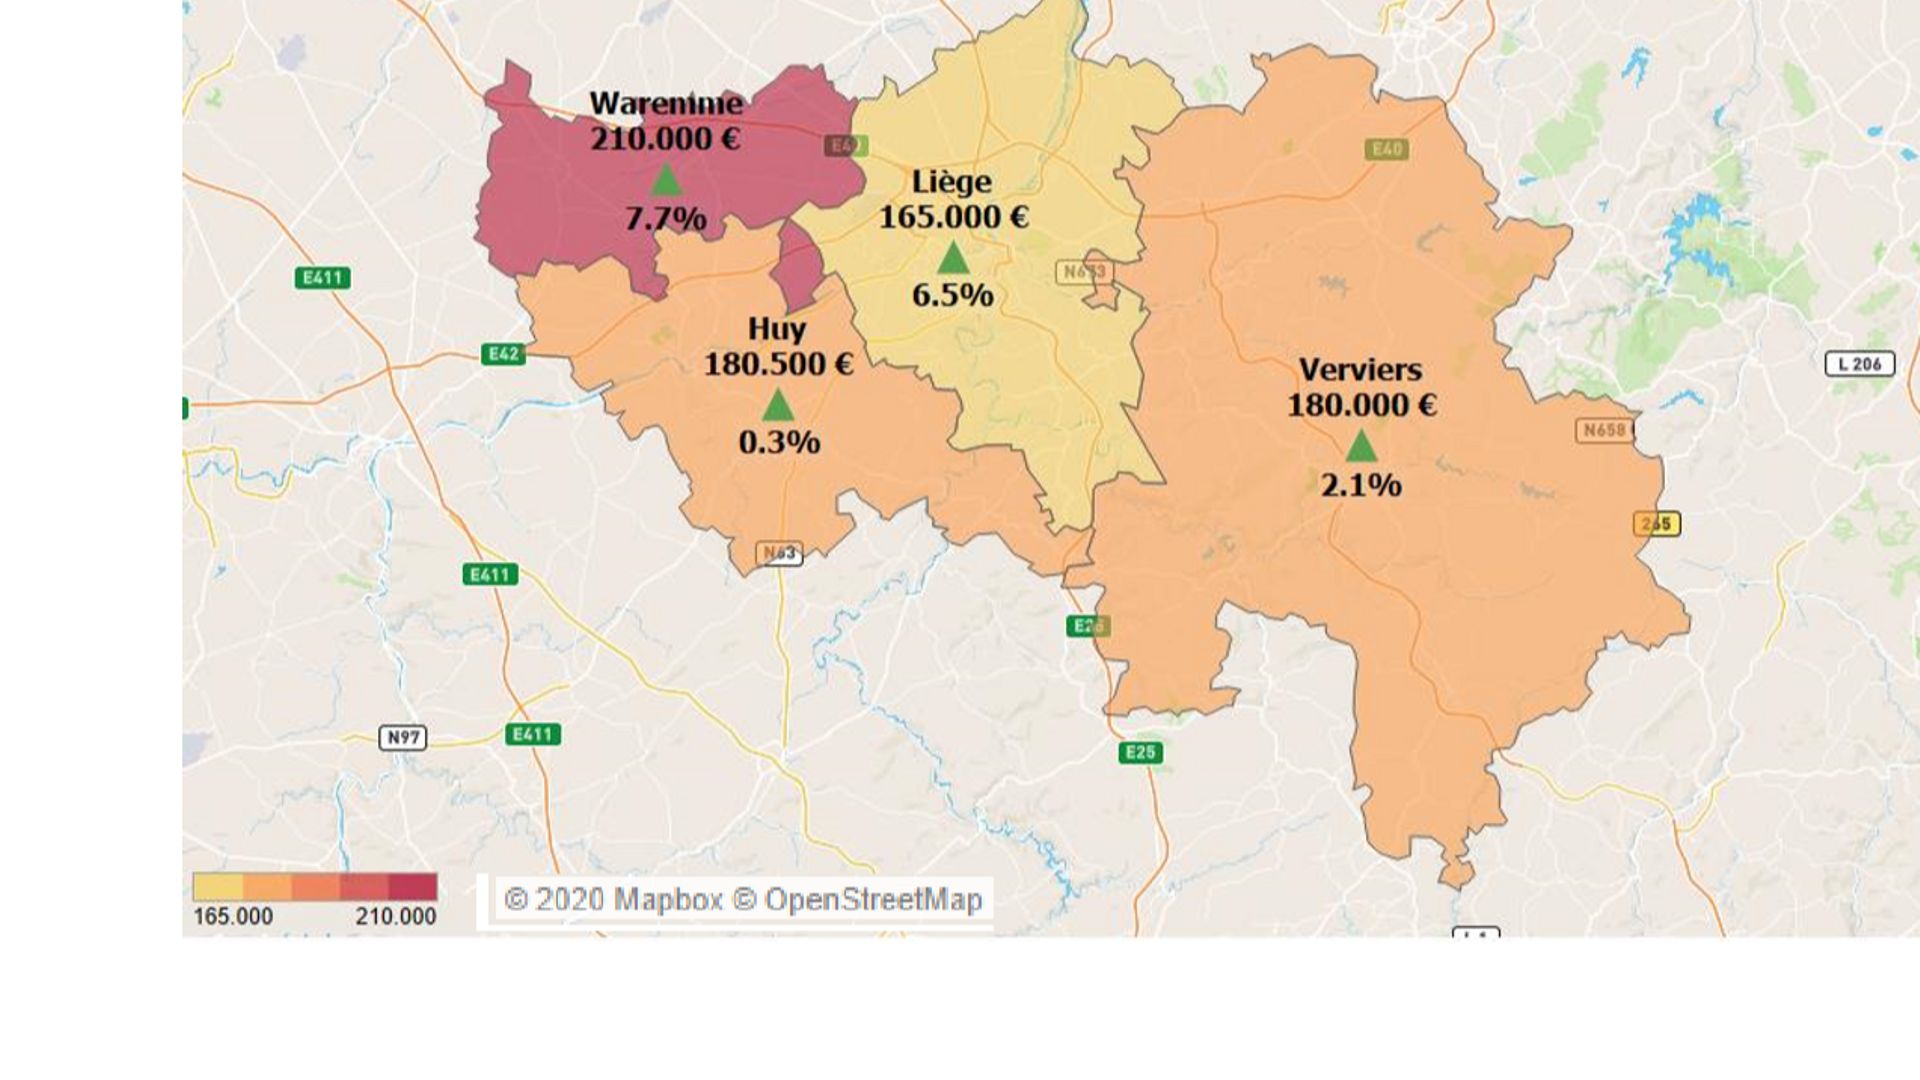 Marché immobilier 2019 en province de Liège : les prix des maisons toujours en augmentation